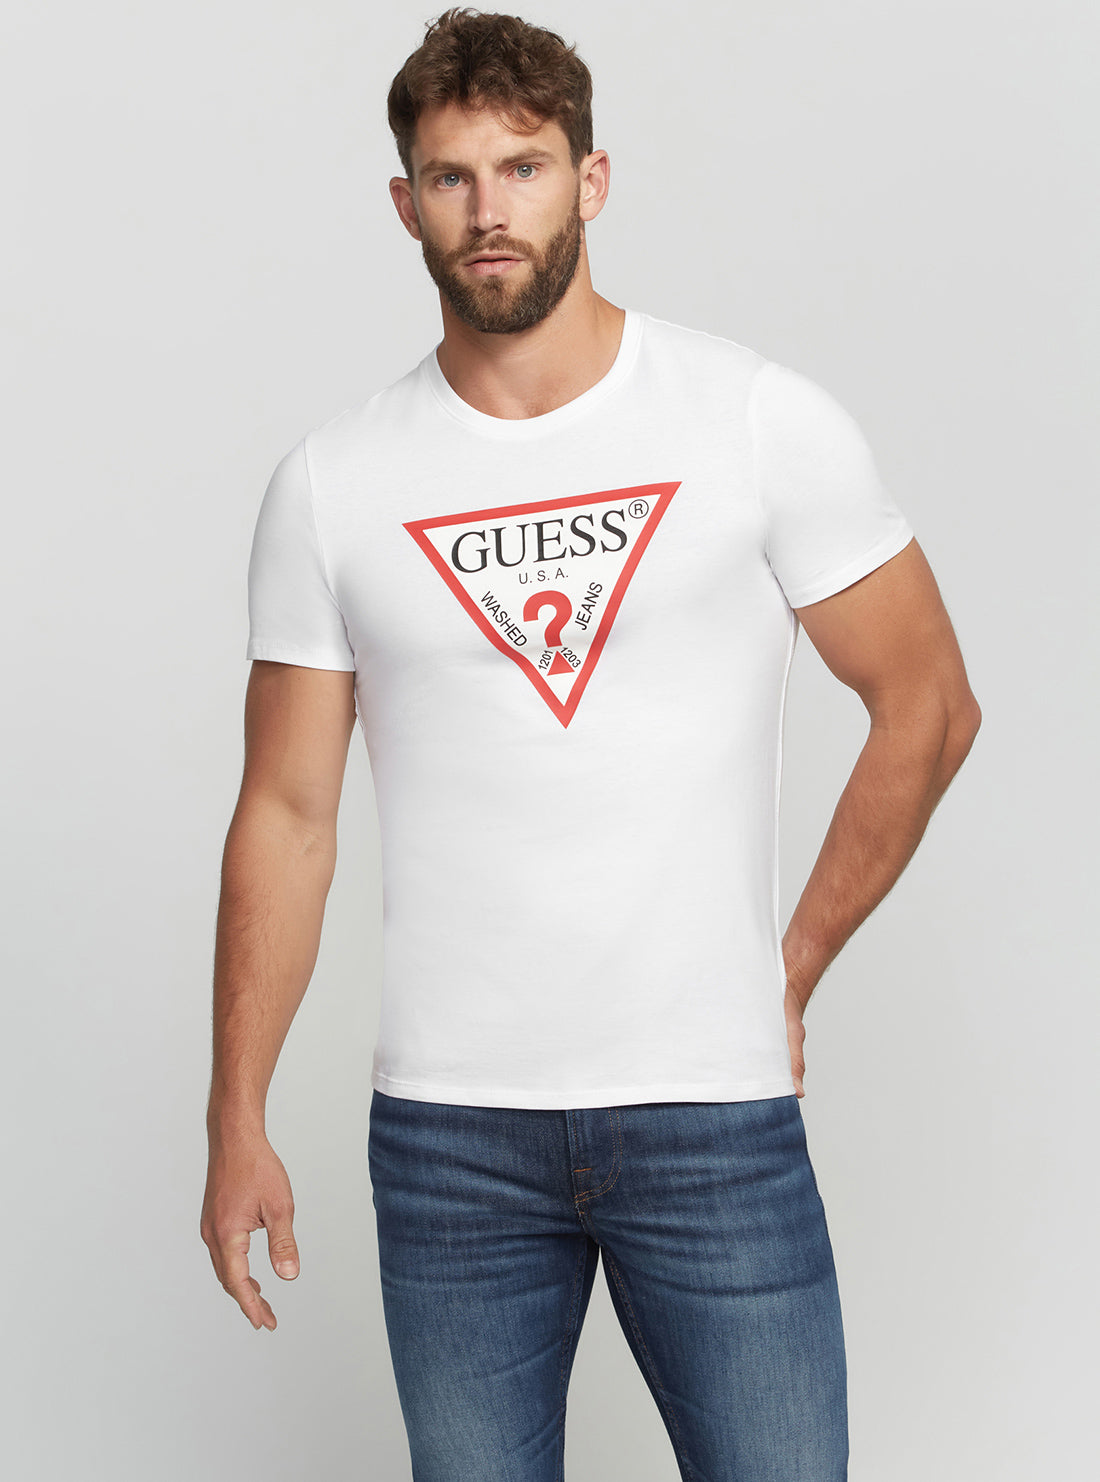 GUESS Men's Eco White Original Logo T-Shirt M2YI71I3Z11 Front View